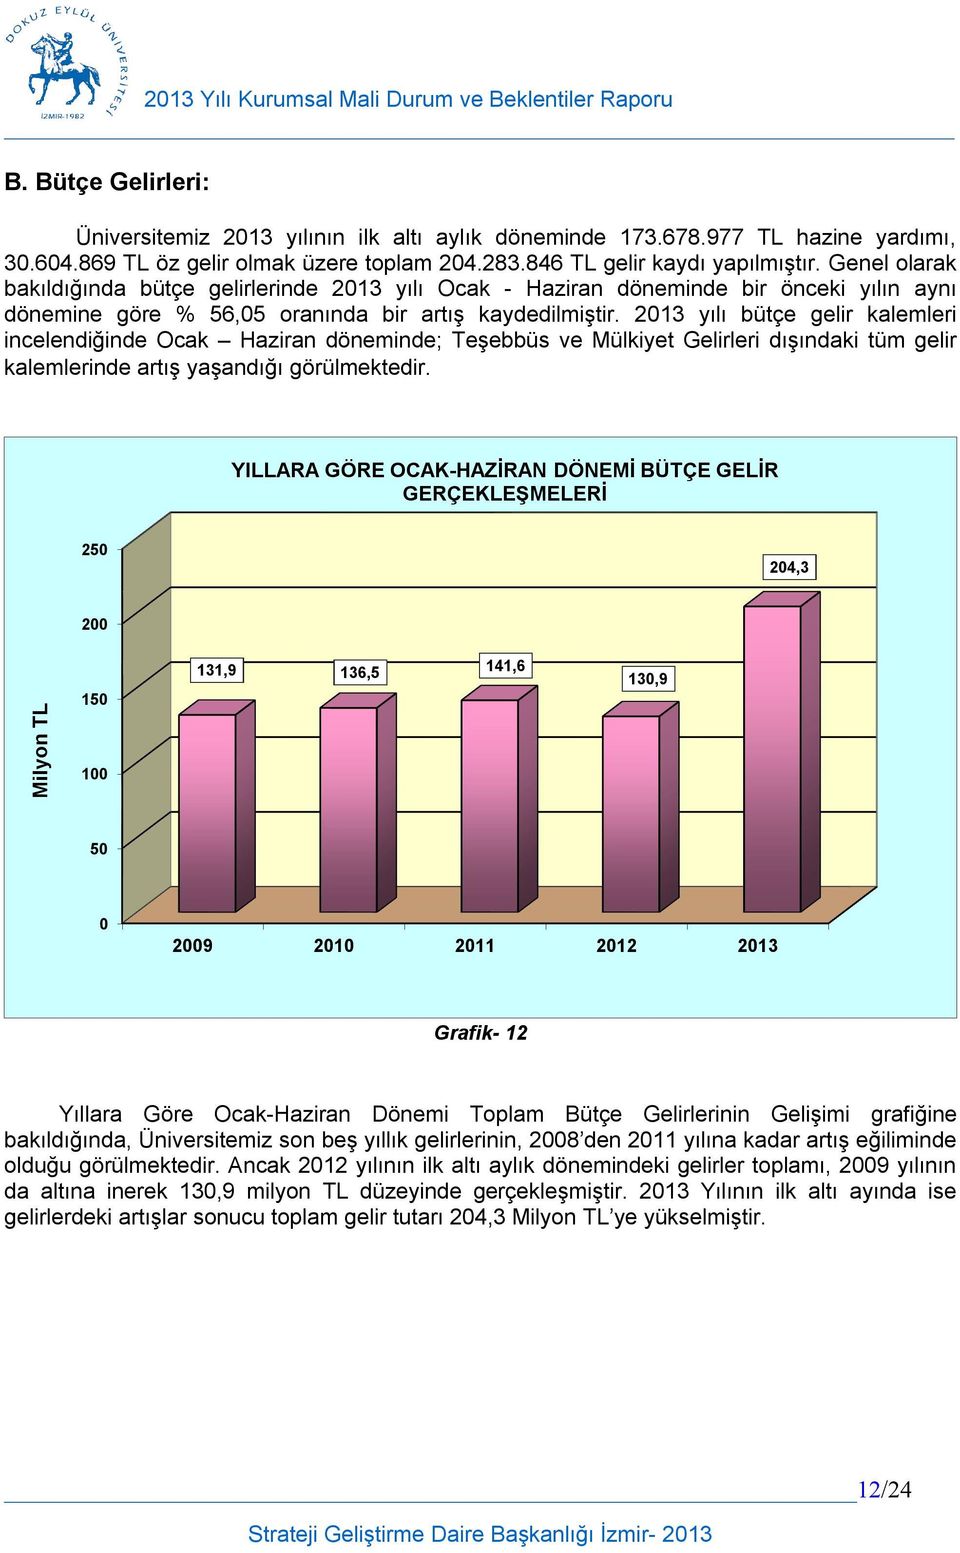 2013 yılı bütçe gelir kalemleri incelendiğinde Ocak Haziran döneminde; Teşebbüs ve Mülkiyet Gelirleri dışındaki tüm gelir kalemlerinde artış yaşandığı görülmektedir.